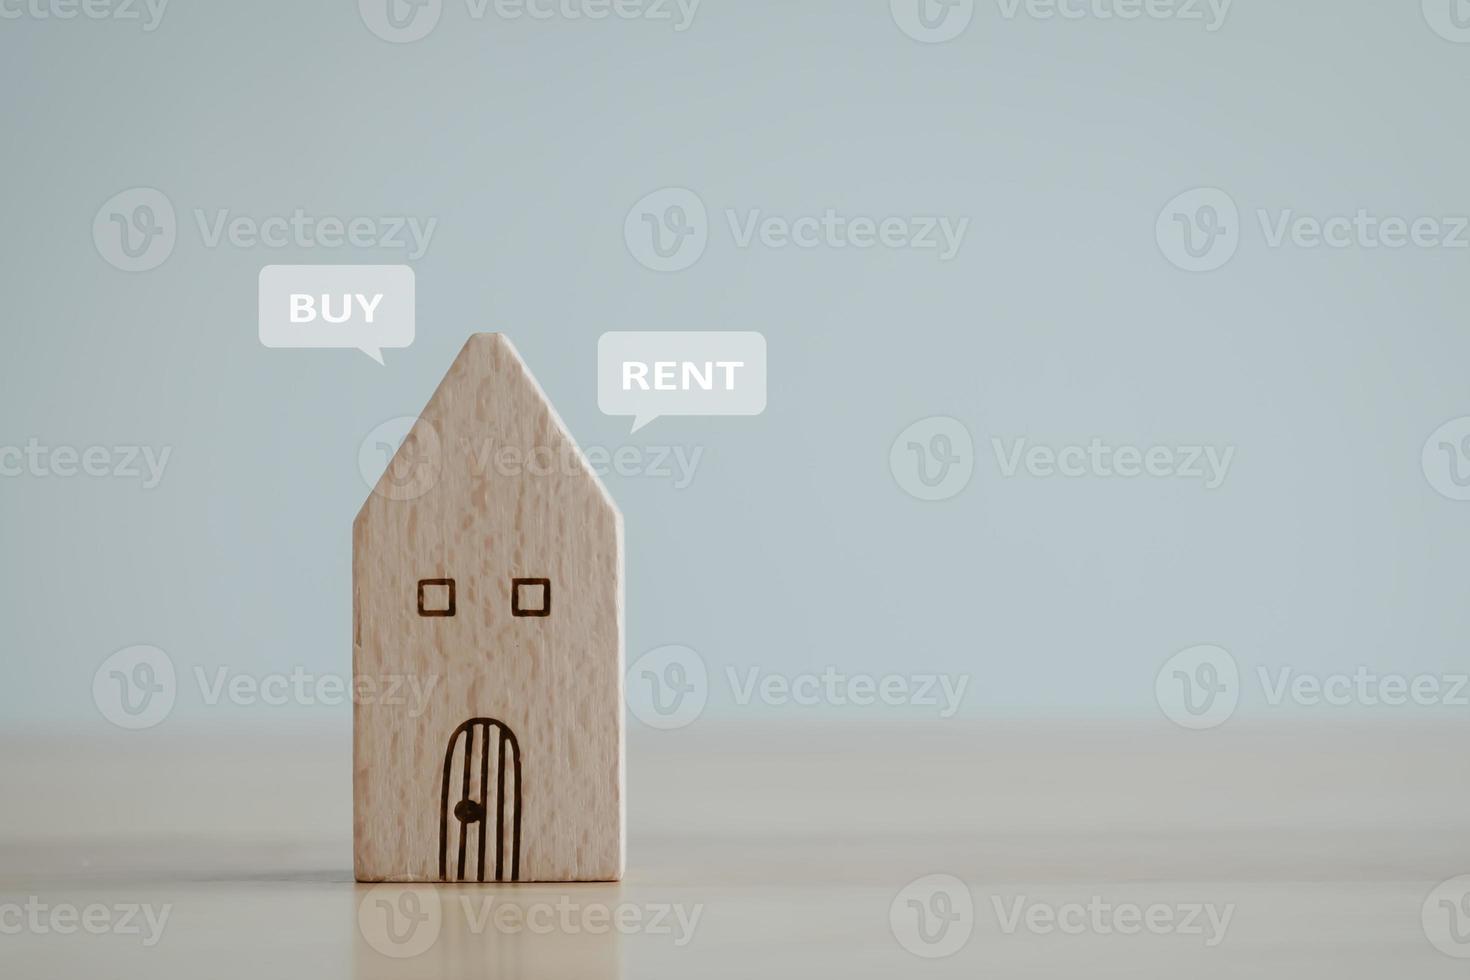 köpa eller hyra Hem begrepp. verklig egendom, fast egendom investering. val mellan köpa och hyra. arrende hus. Hem inköp som handlar om. foto